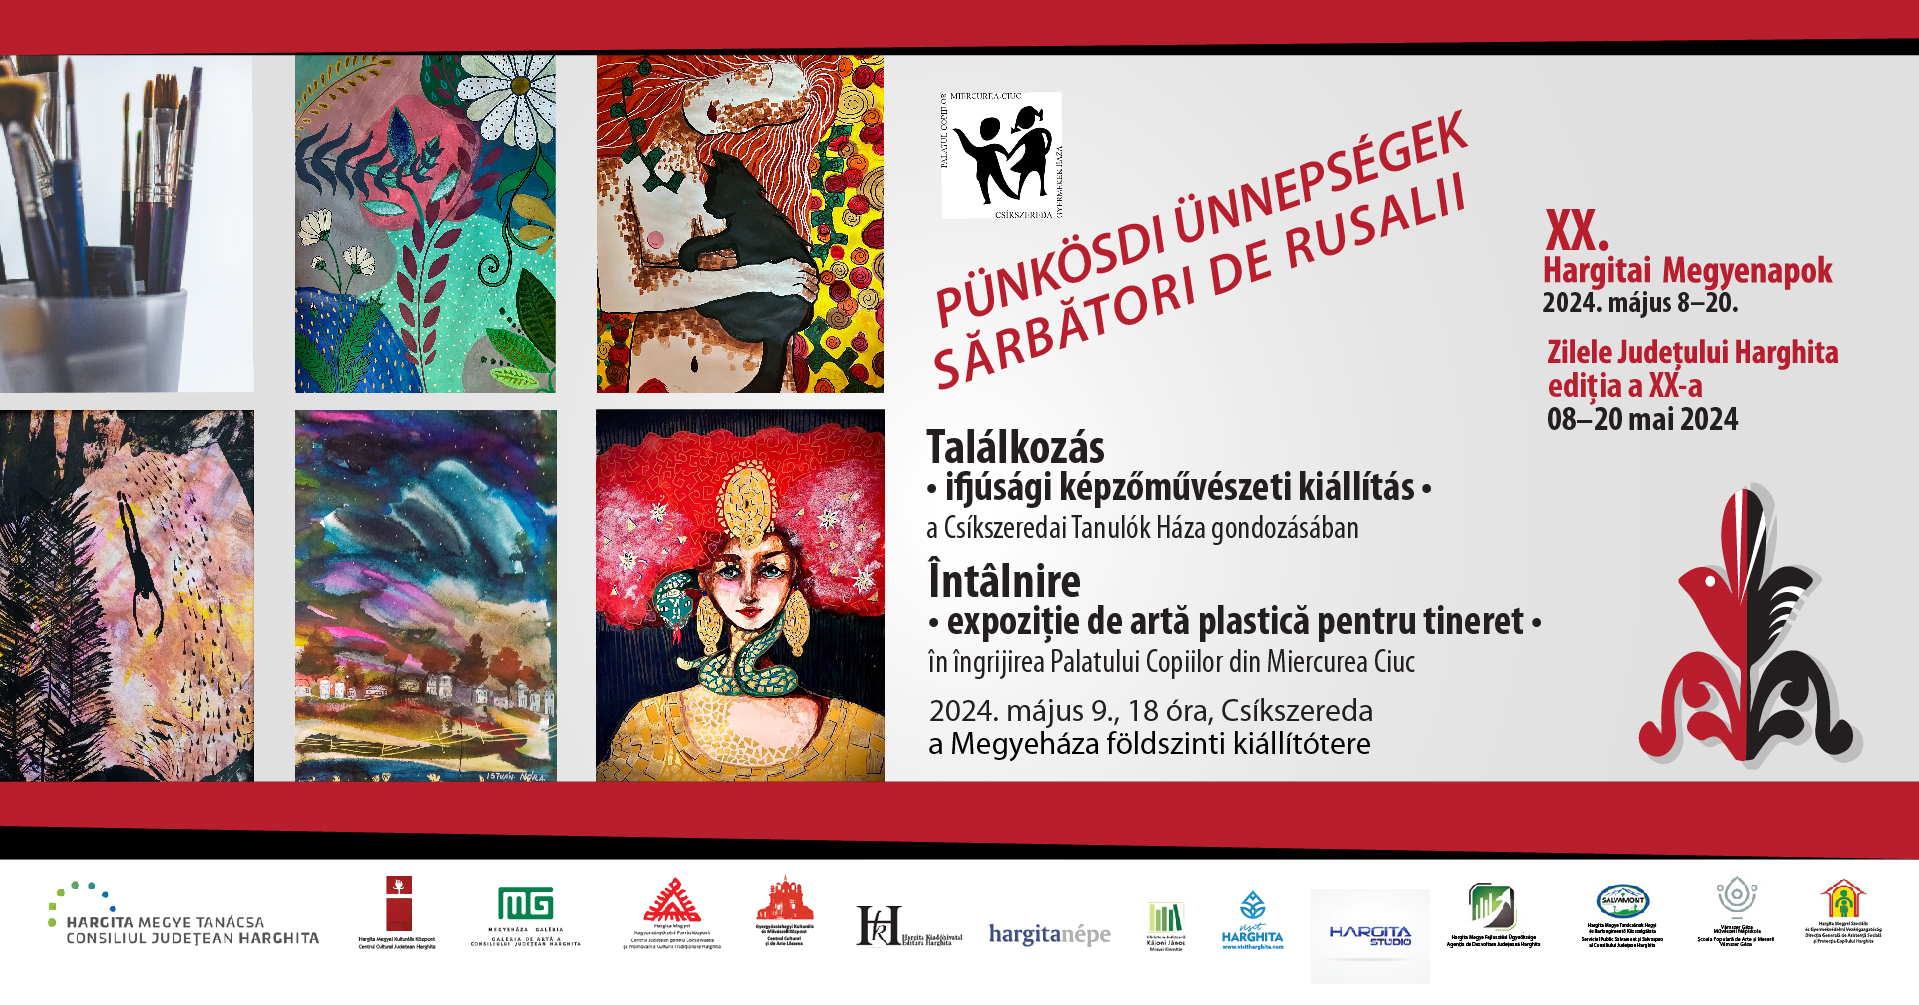 Întâlnire - expoziție de artă plastică pentru tineret în îngrijirea Palatului Copiilor din Miercurea Ciuc